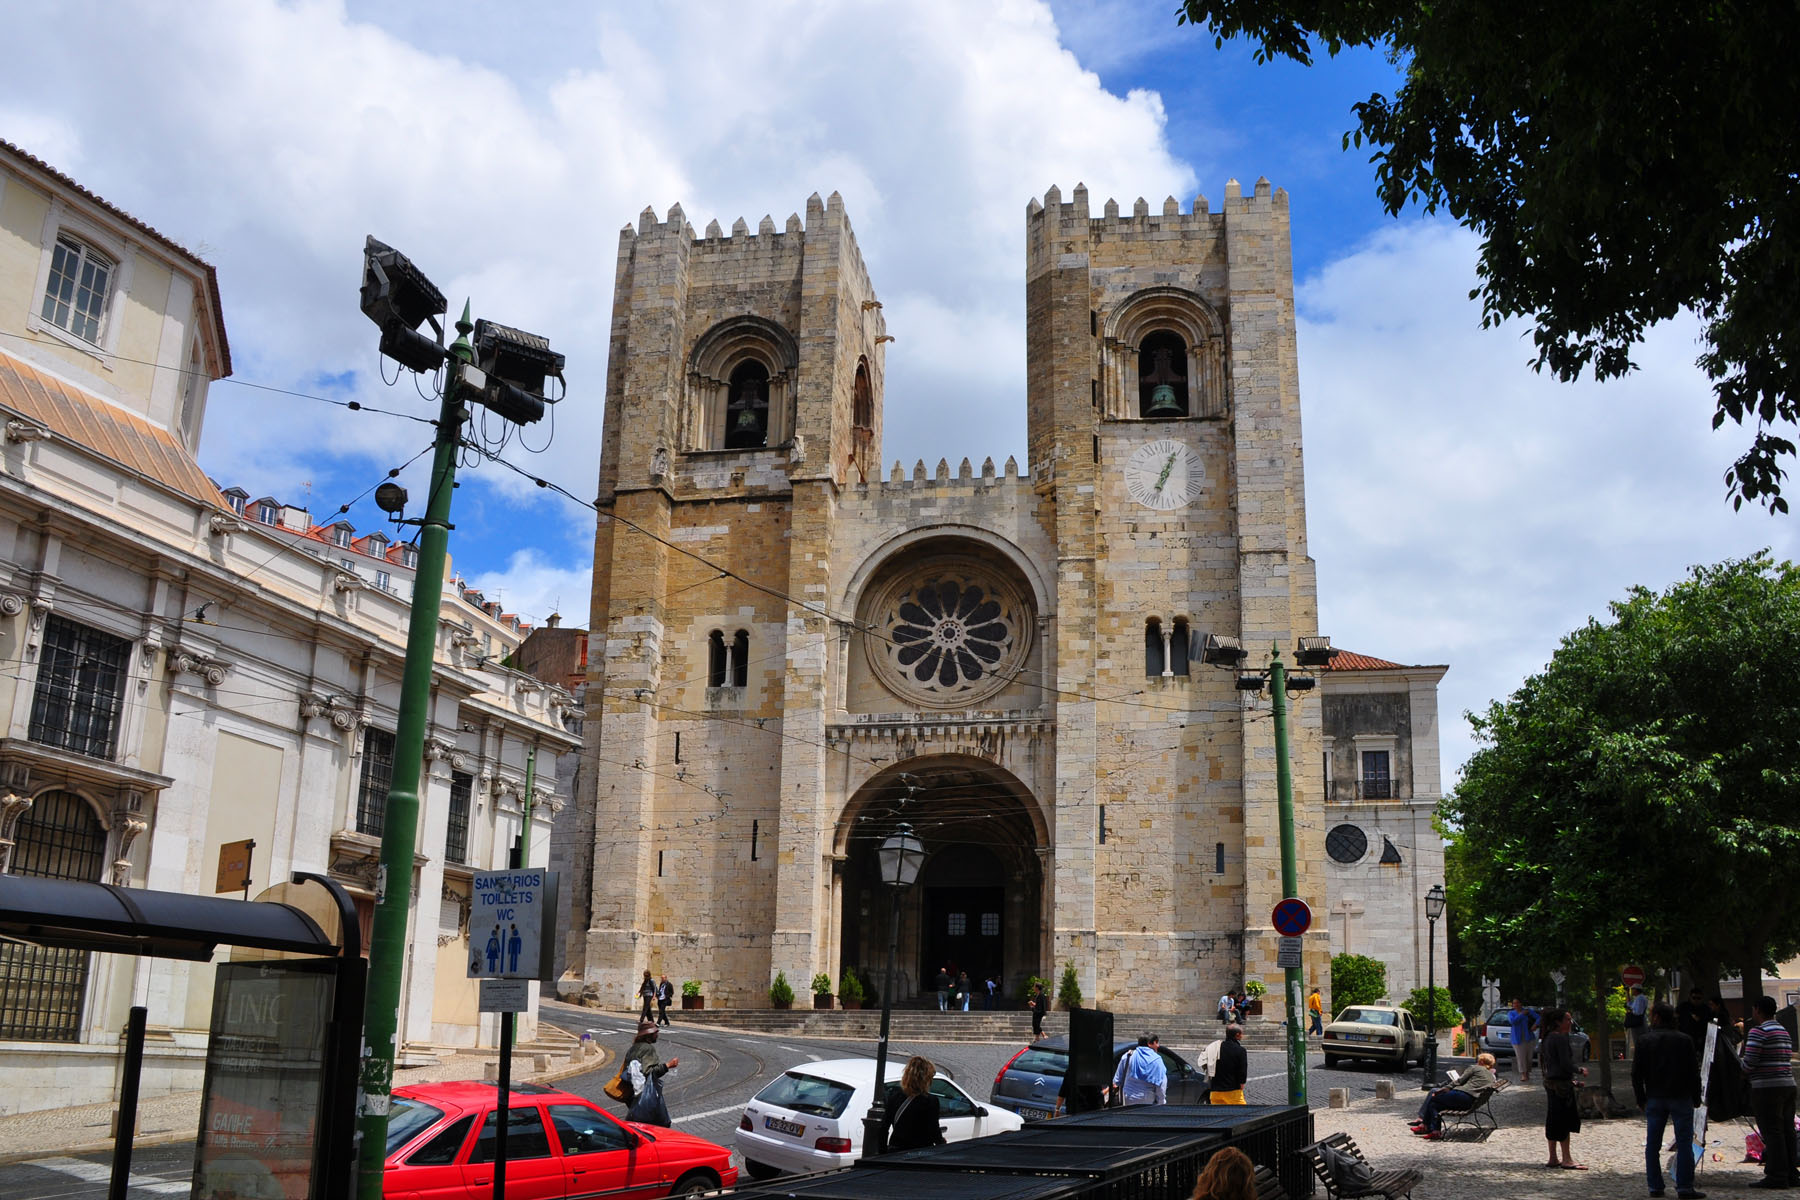 Lizbonska katedrala (Santa Maria Maior)